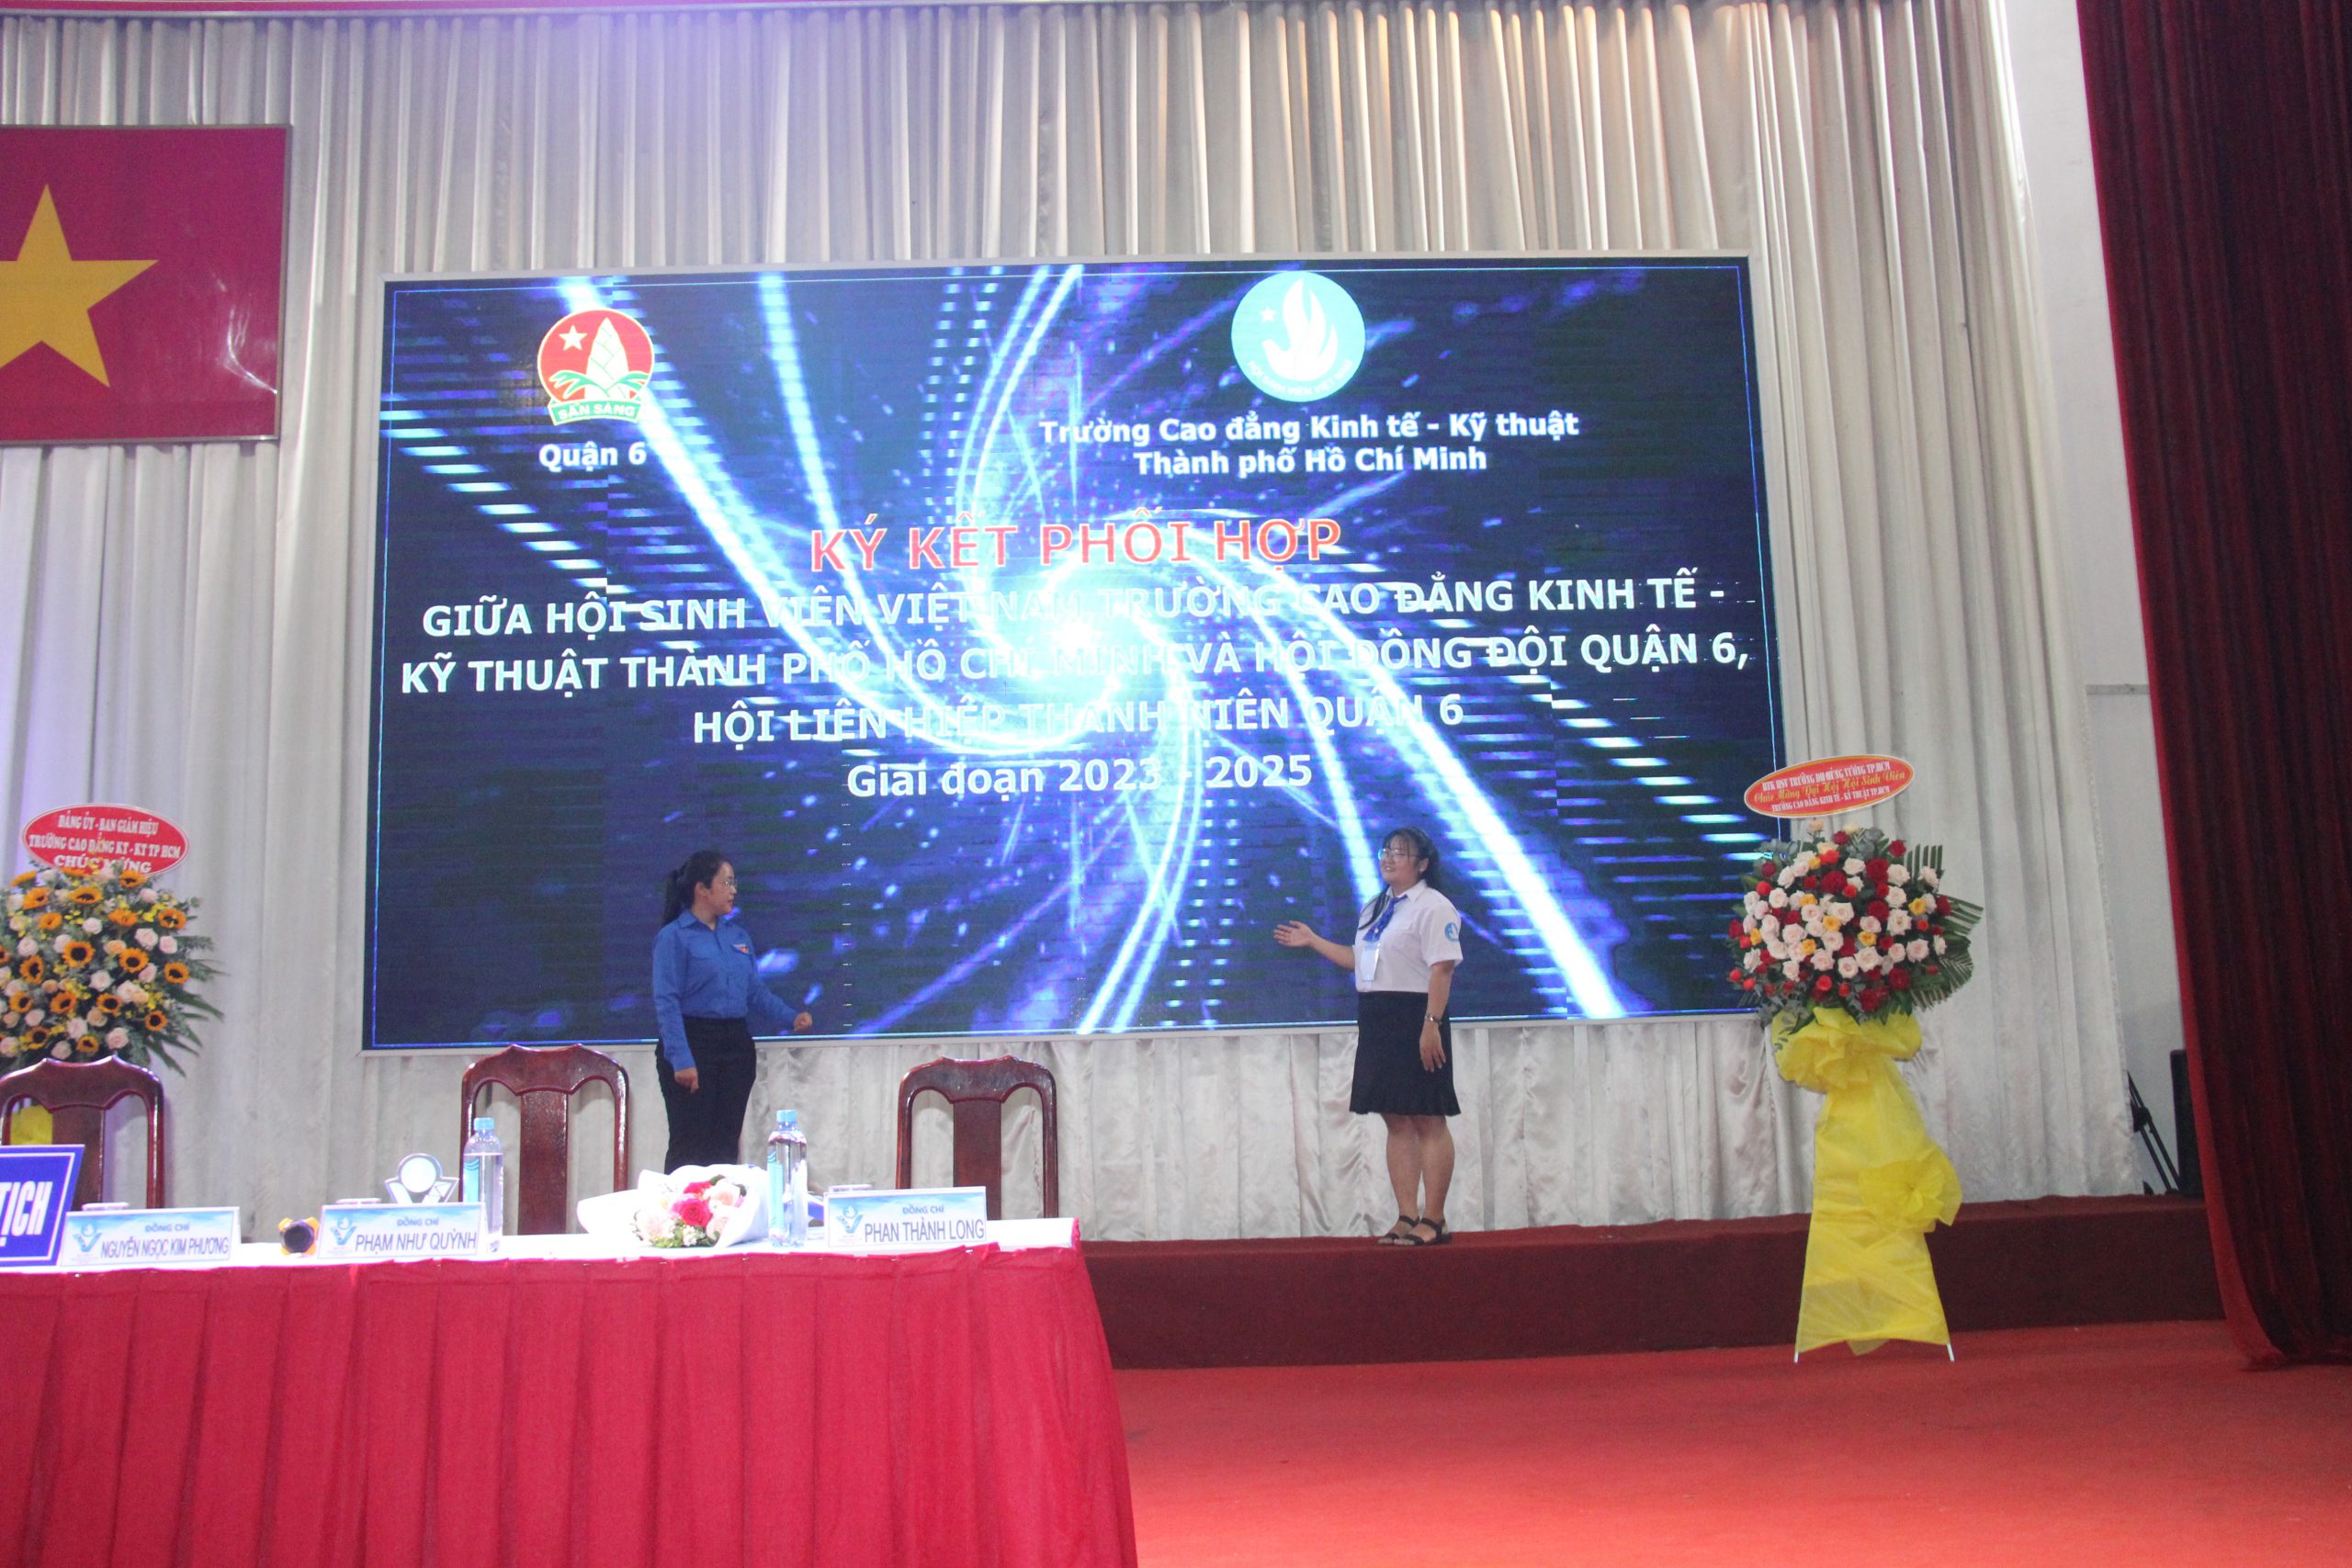 Đại hội Đại biểu Hội Sinh viên Việt Nam Trường Cao đẳng Kinh tế – Kỹ thuật Thành phố Hồ Chí Minh lần thứ V, nhiệm kỳ 2023 – 2025